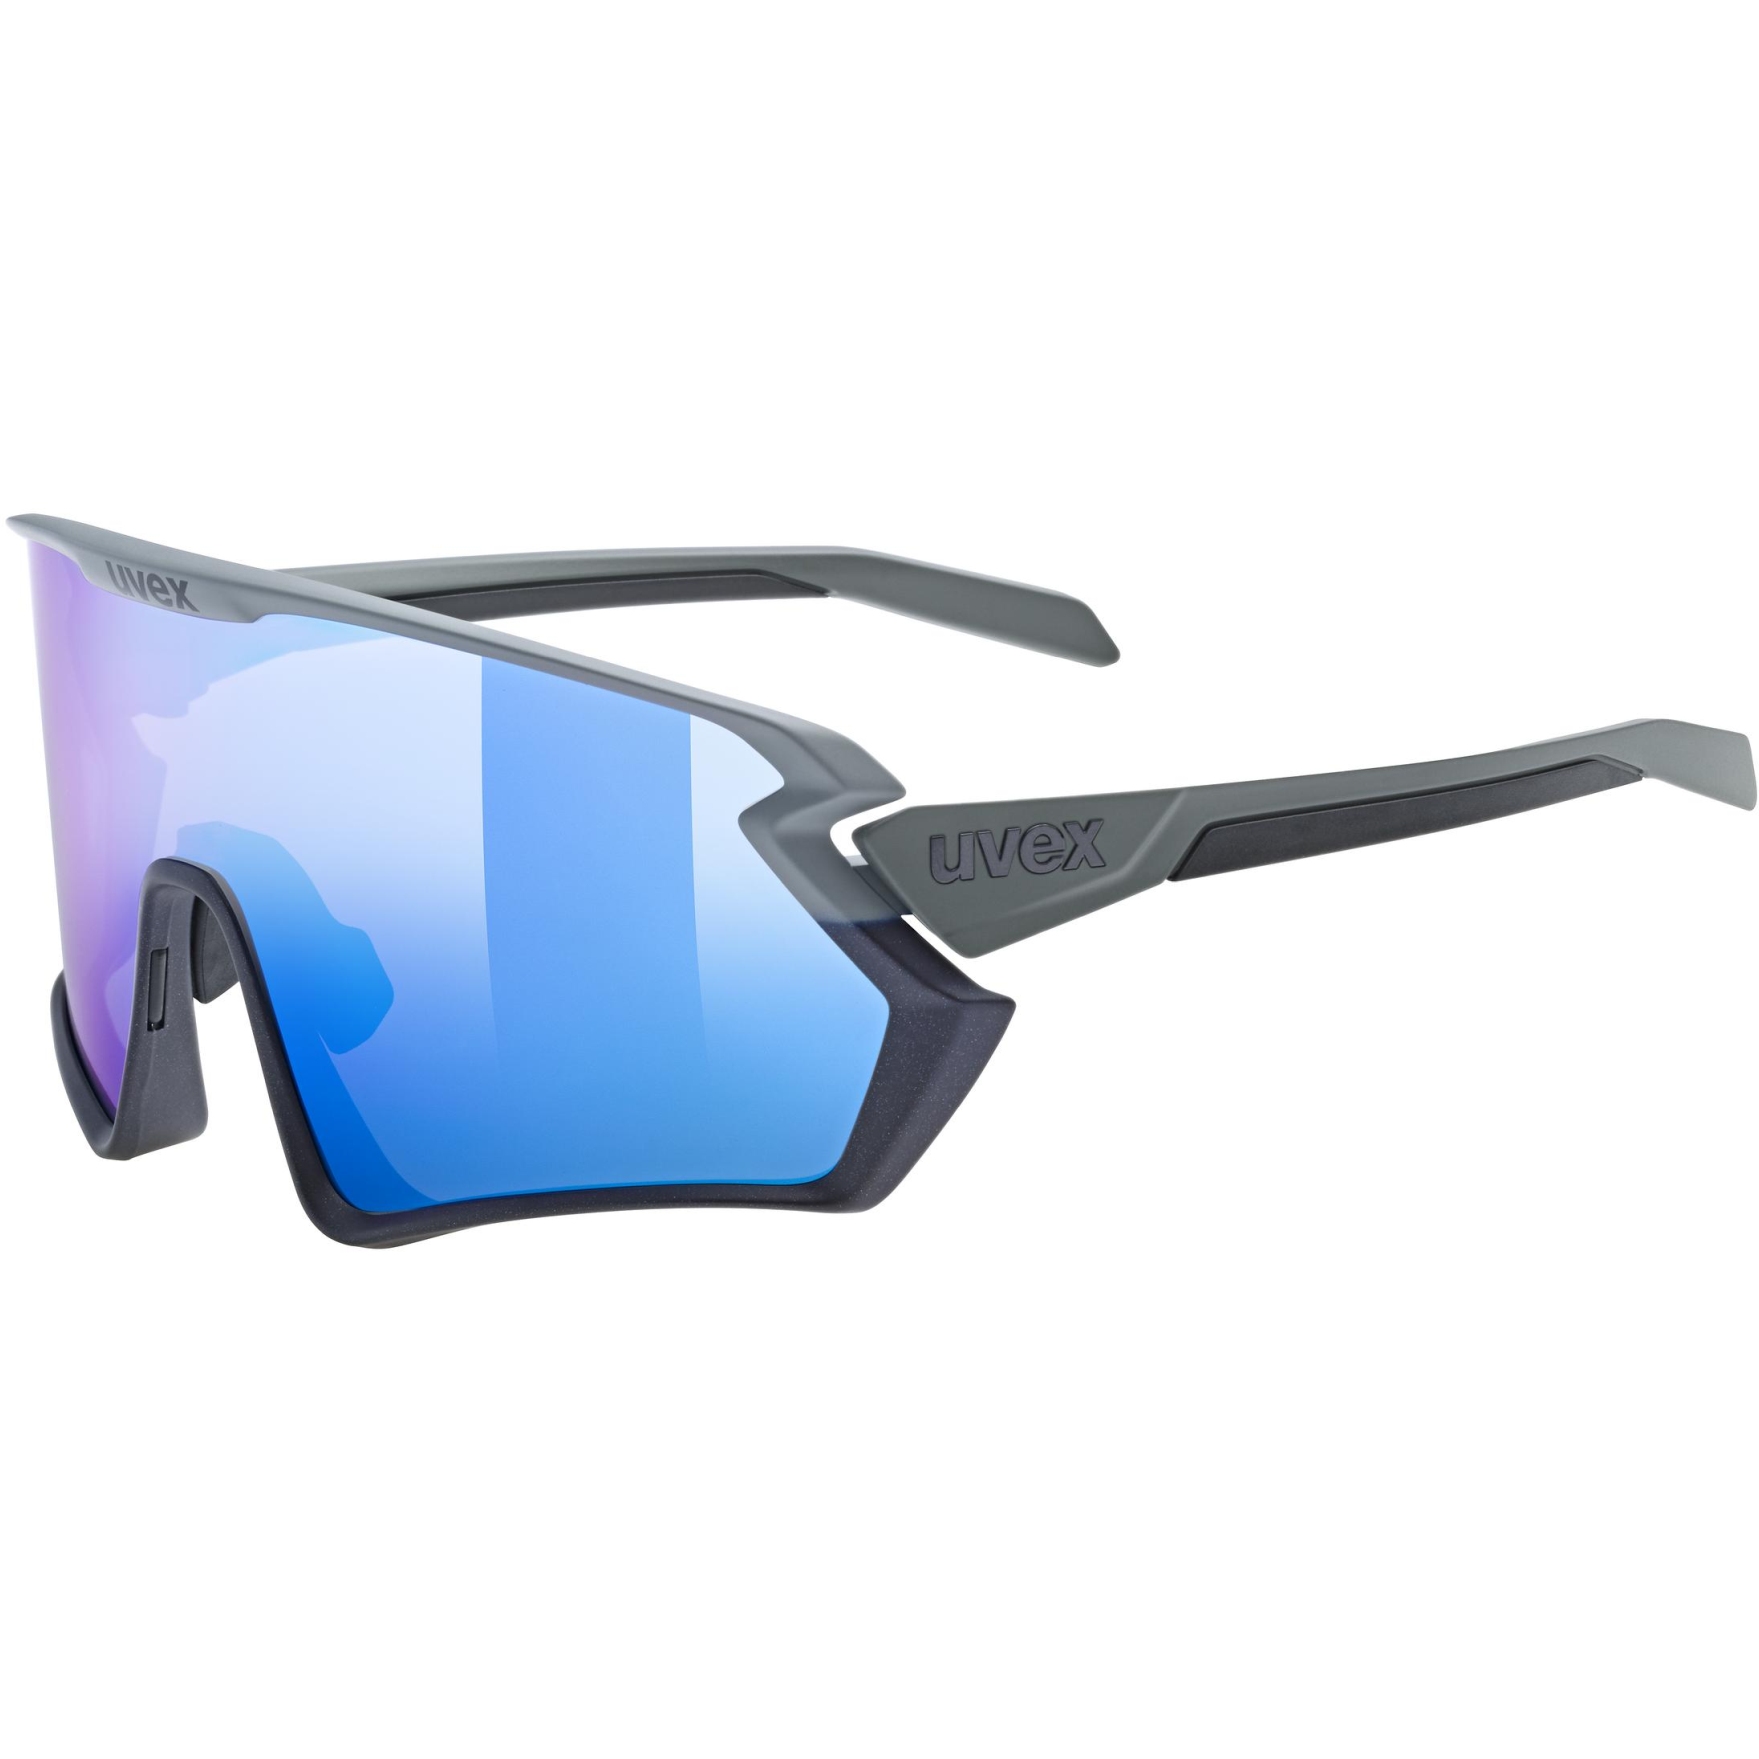 Produktbild von Uvex sportstyle 231 2.0 Brille - rhino deep space matt/mirror blue